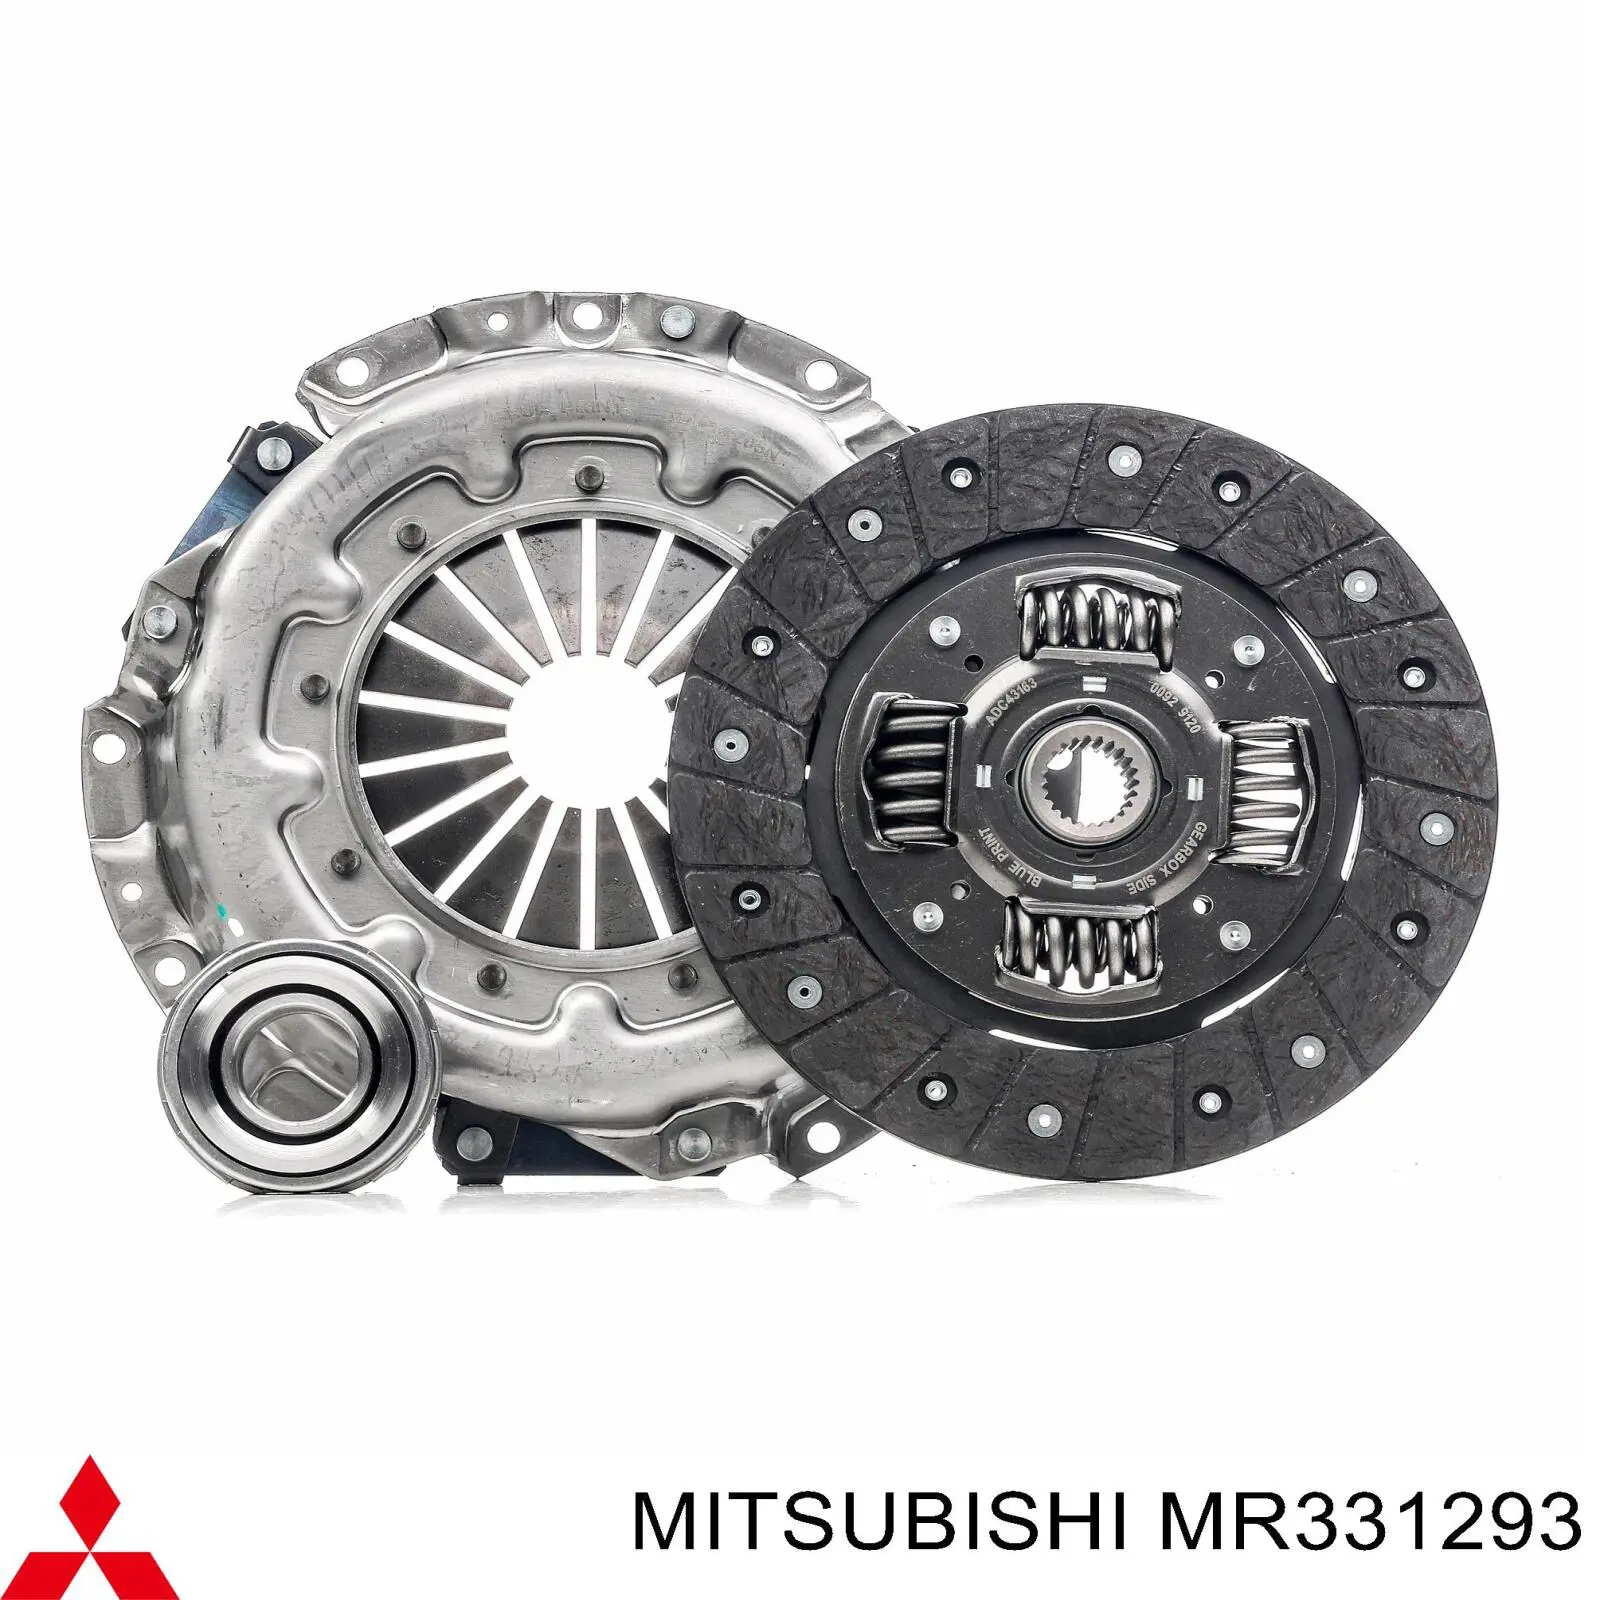 MR331293 Mitsubishi plato de presión del embrague